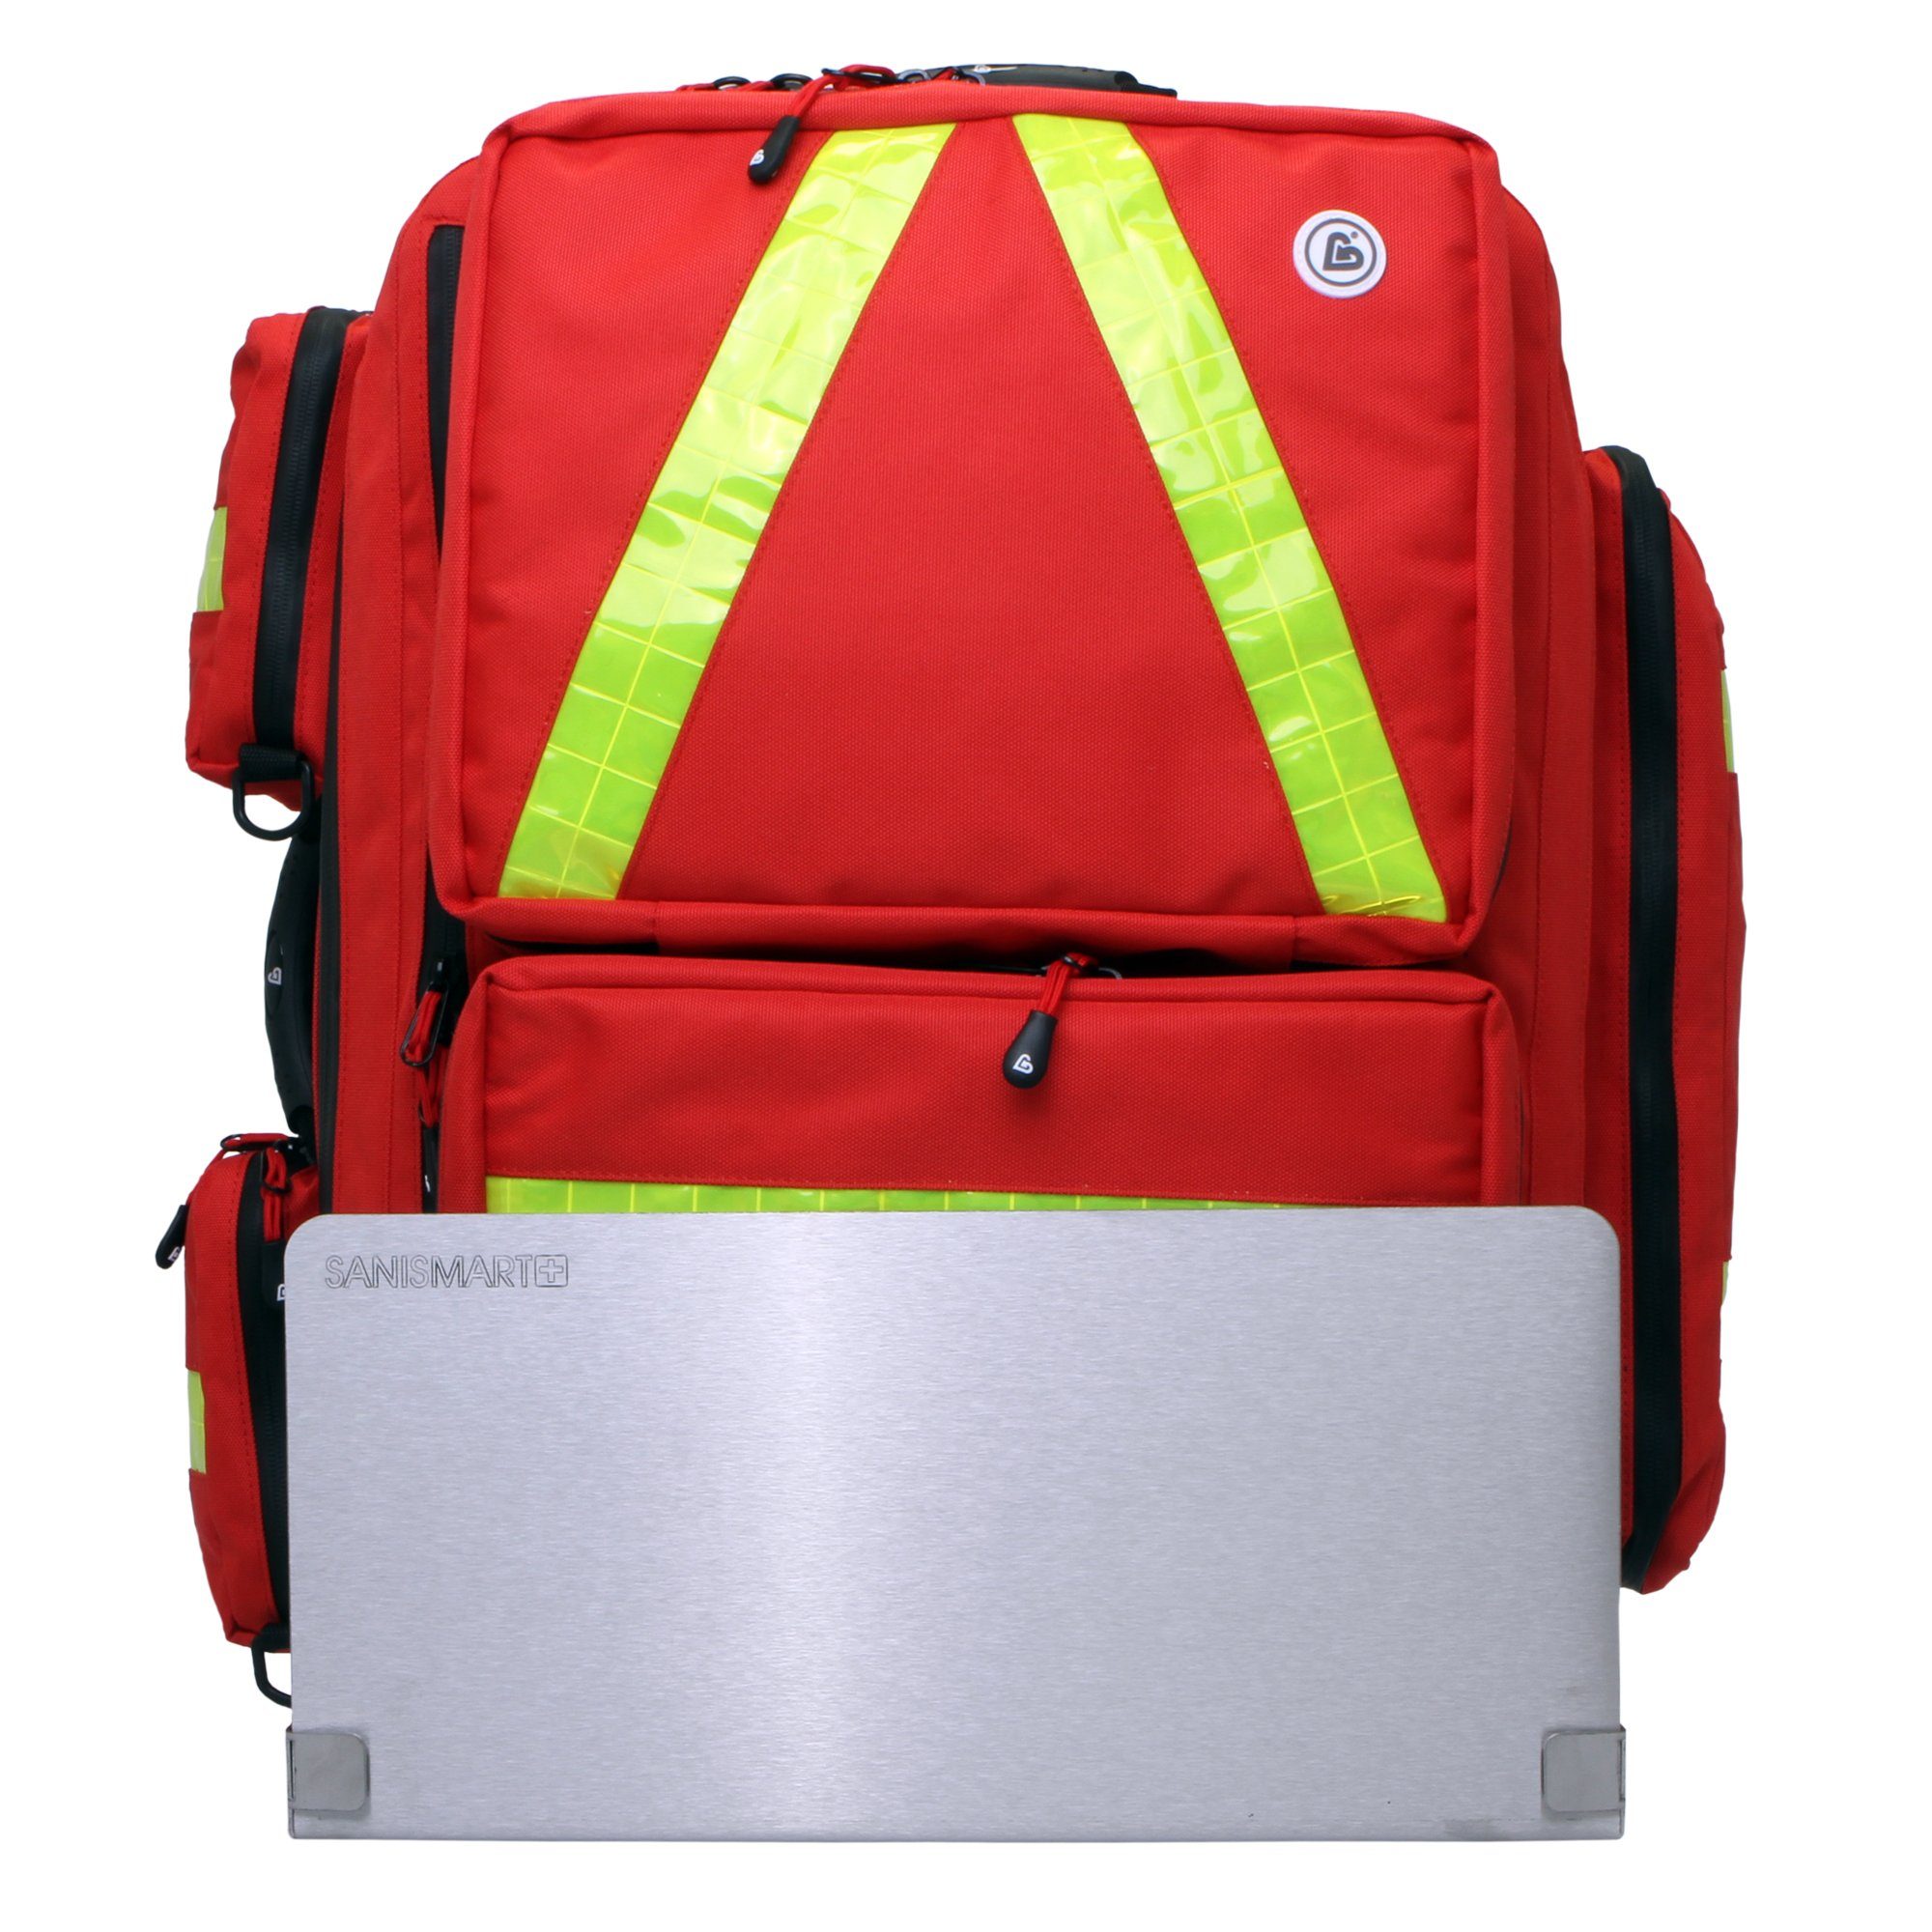 SANISMART Arzttasche Notfallrucksack für Notfallrucksäcke Rot XL mit Wandhalterung Medicus Nylon